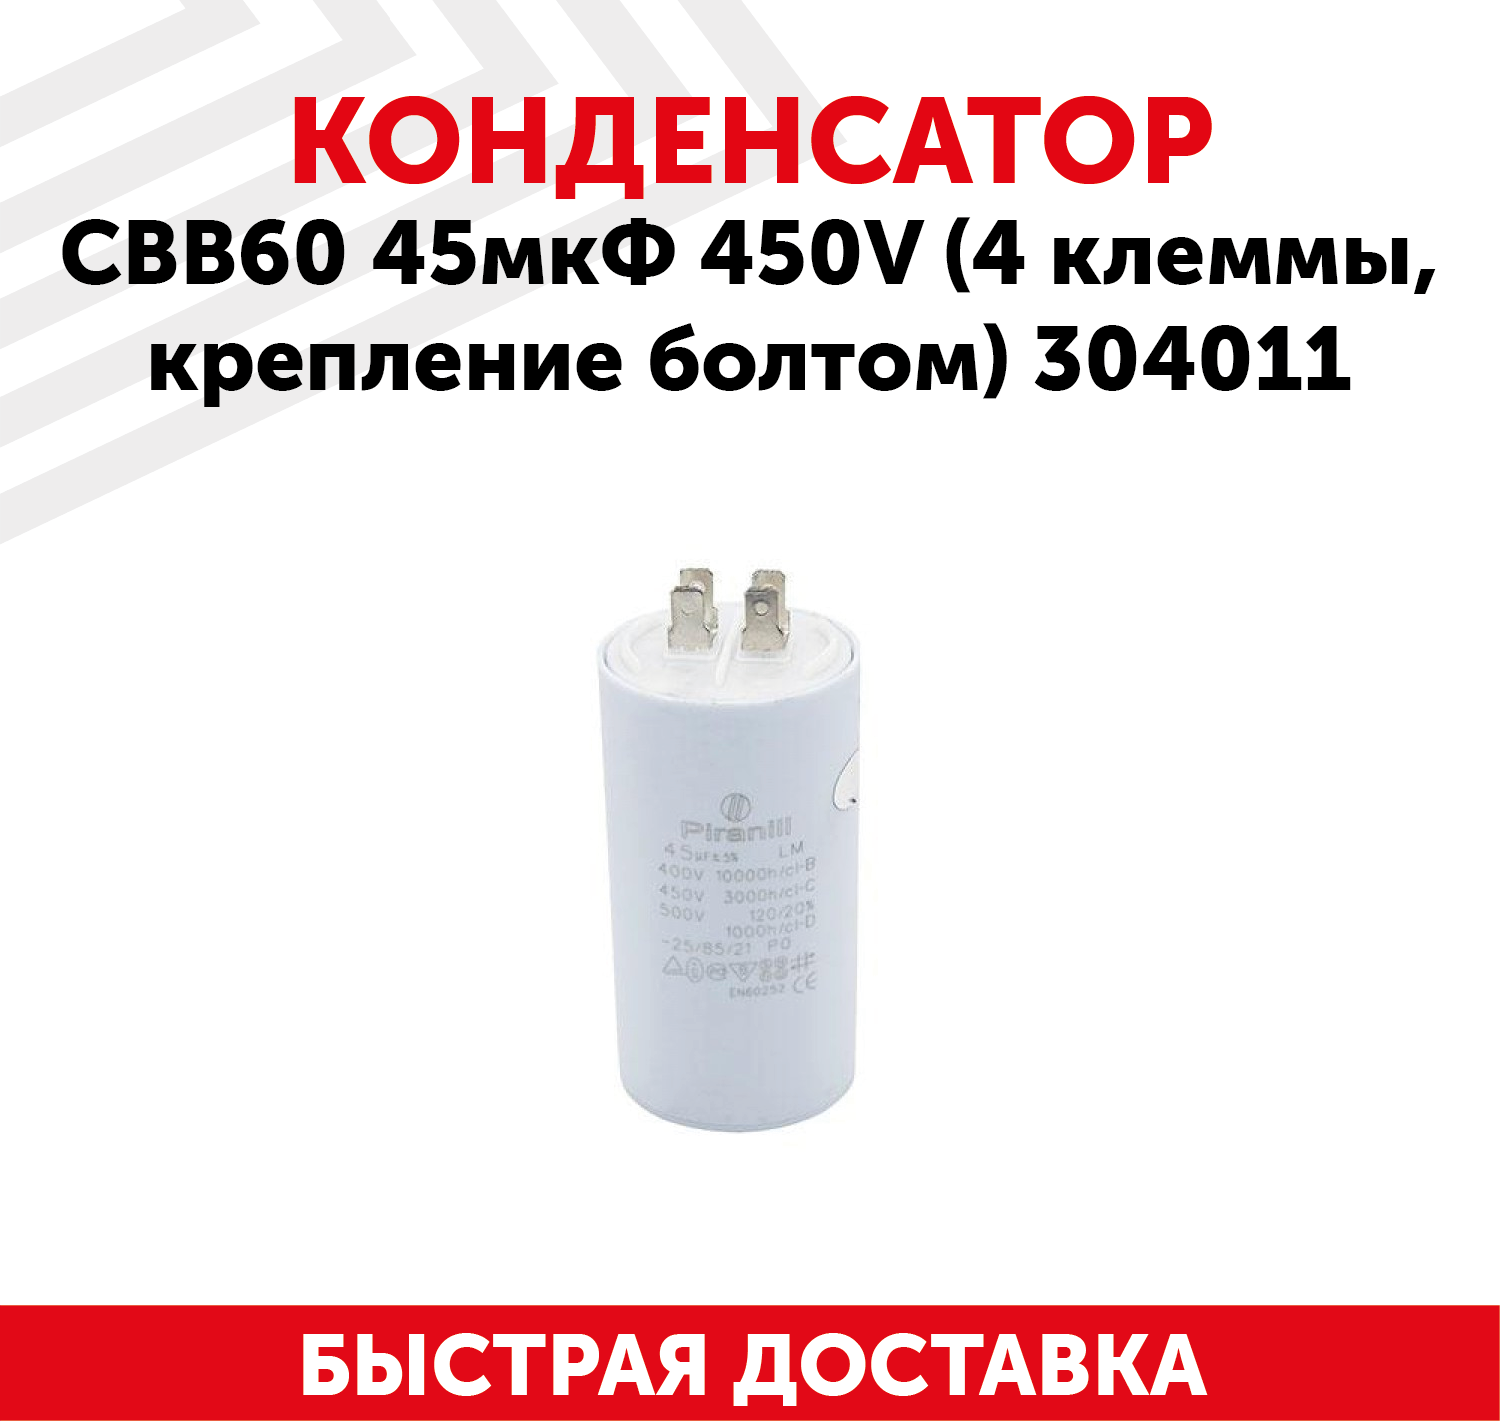 Конденсатор CBB60 45мкФ для электро- и бензоинструмента, 450В, 4 клеммы, крепление болтом, 304011